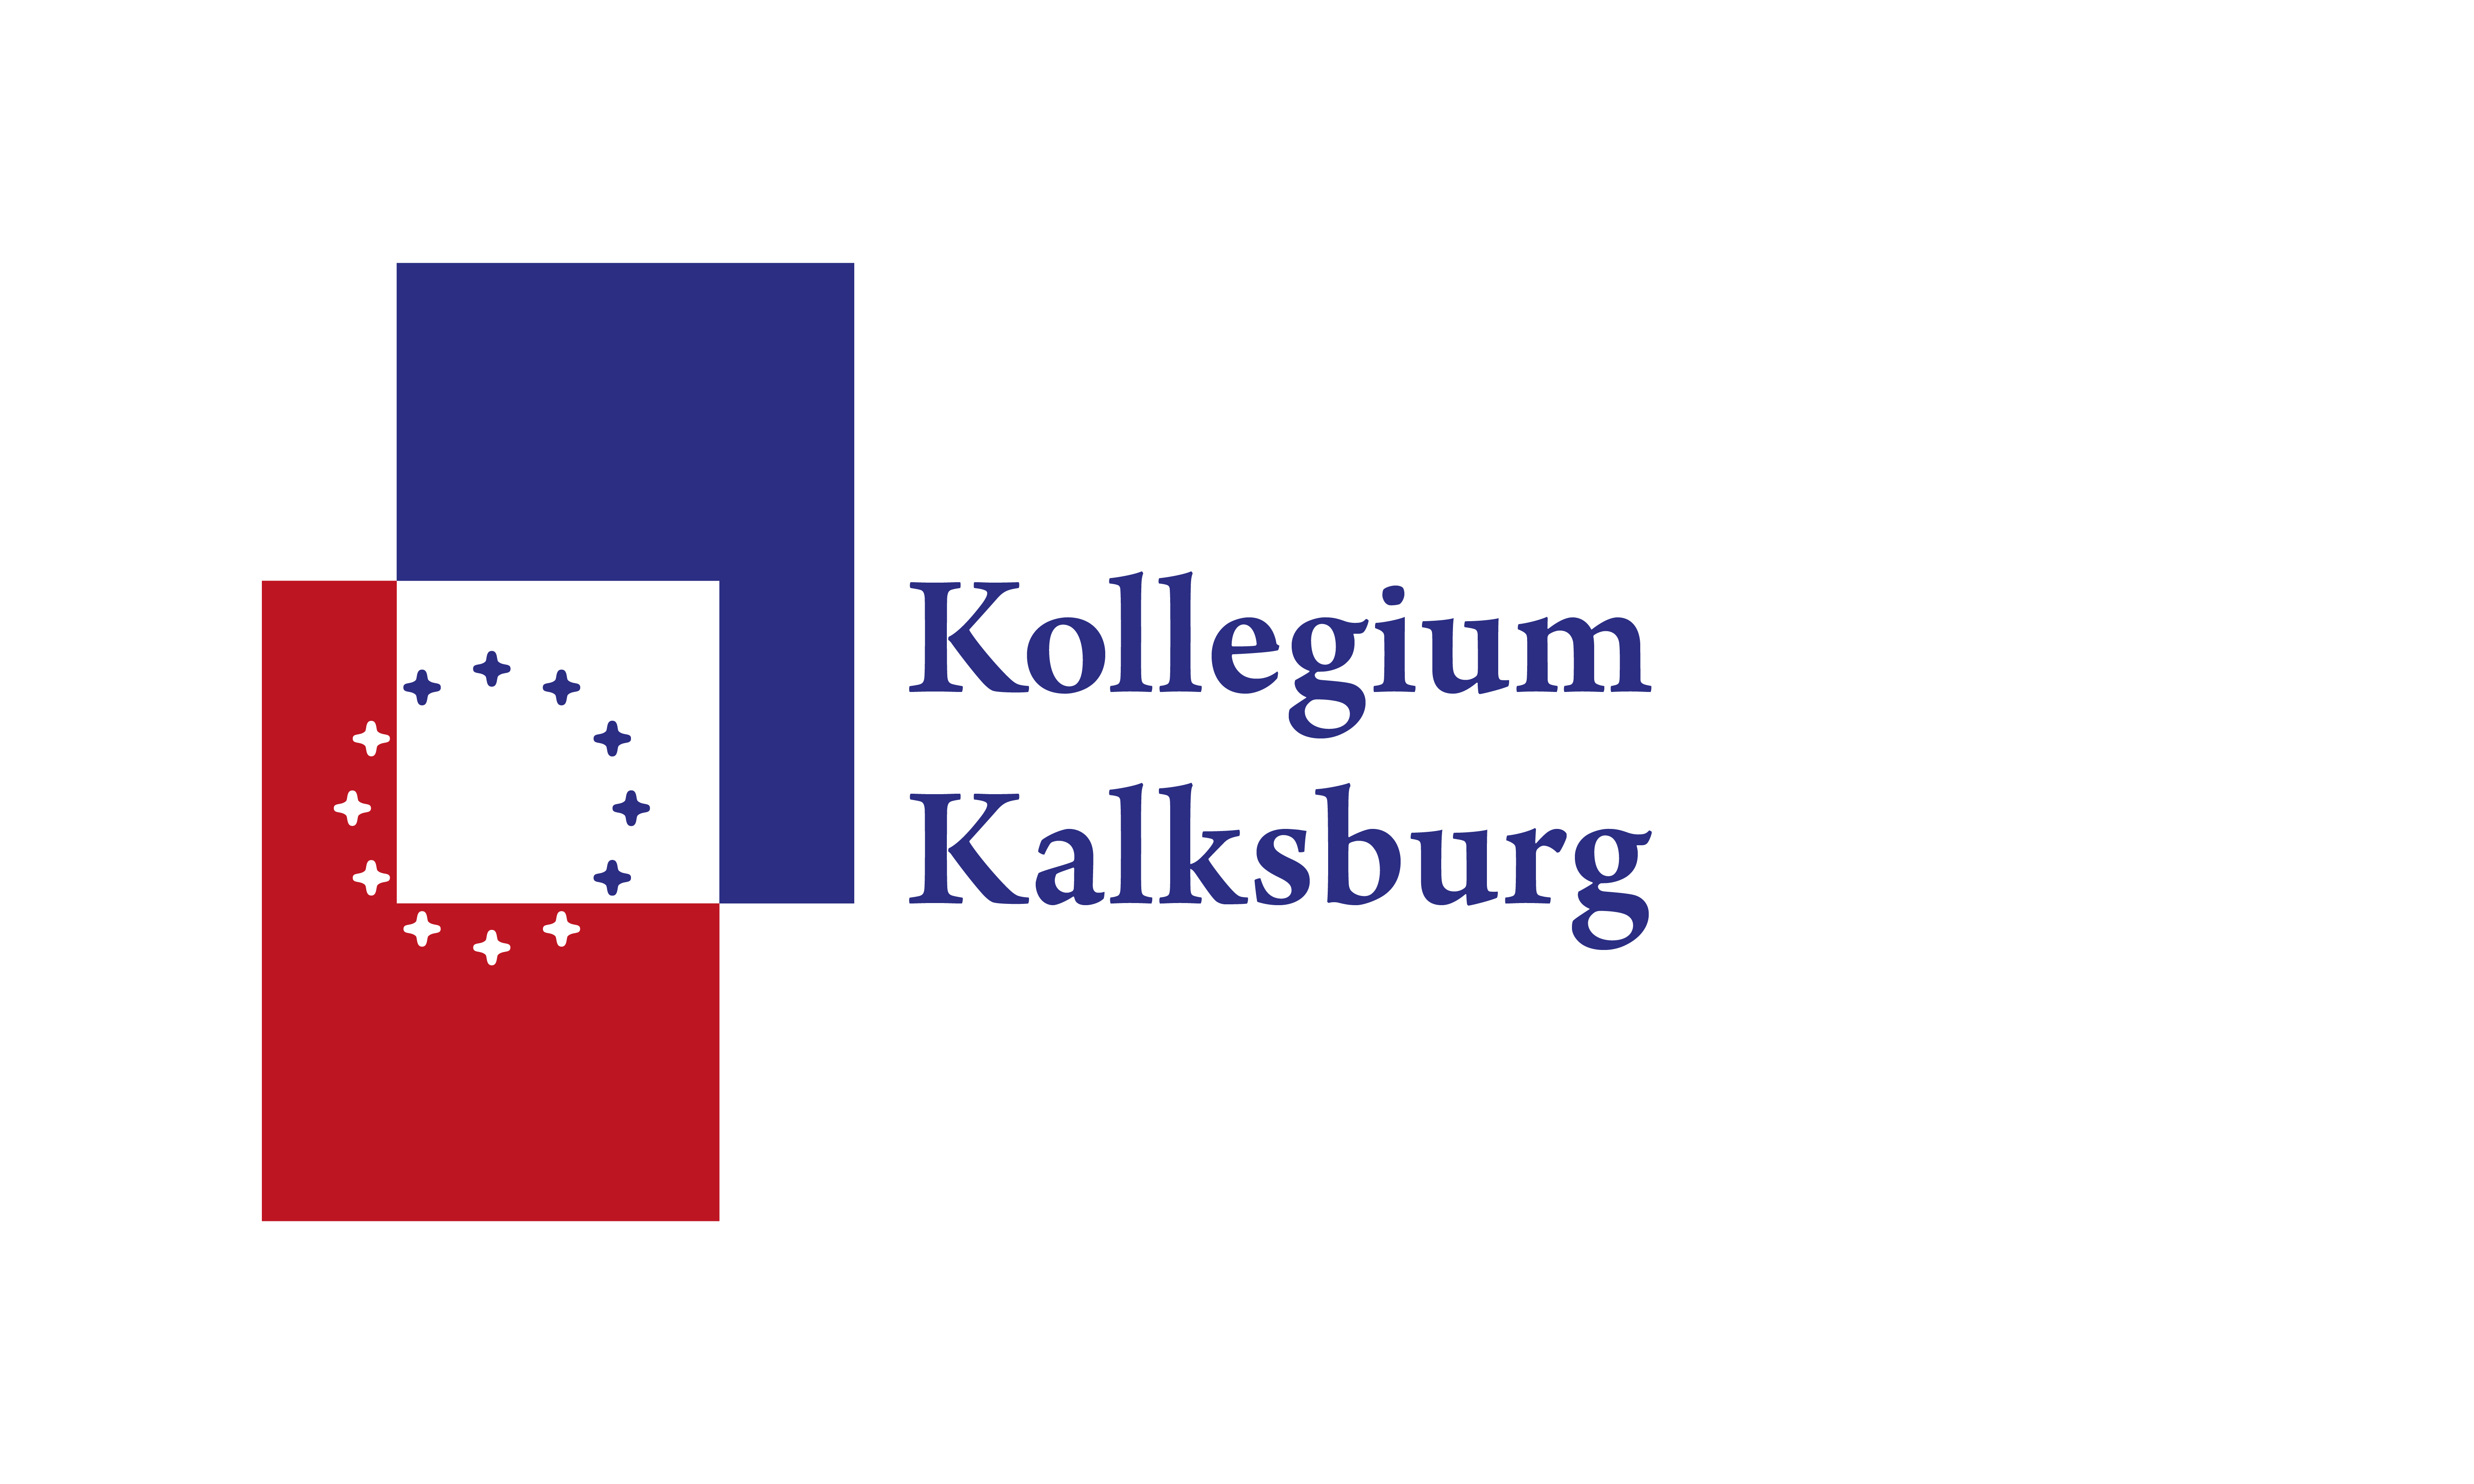 Kollegium Kalksburg - Portal